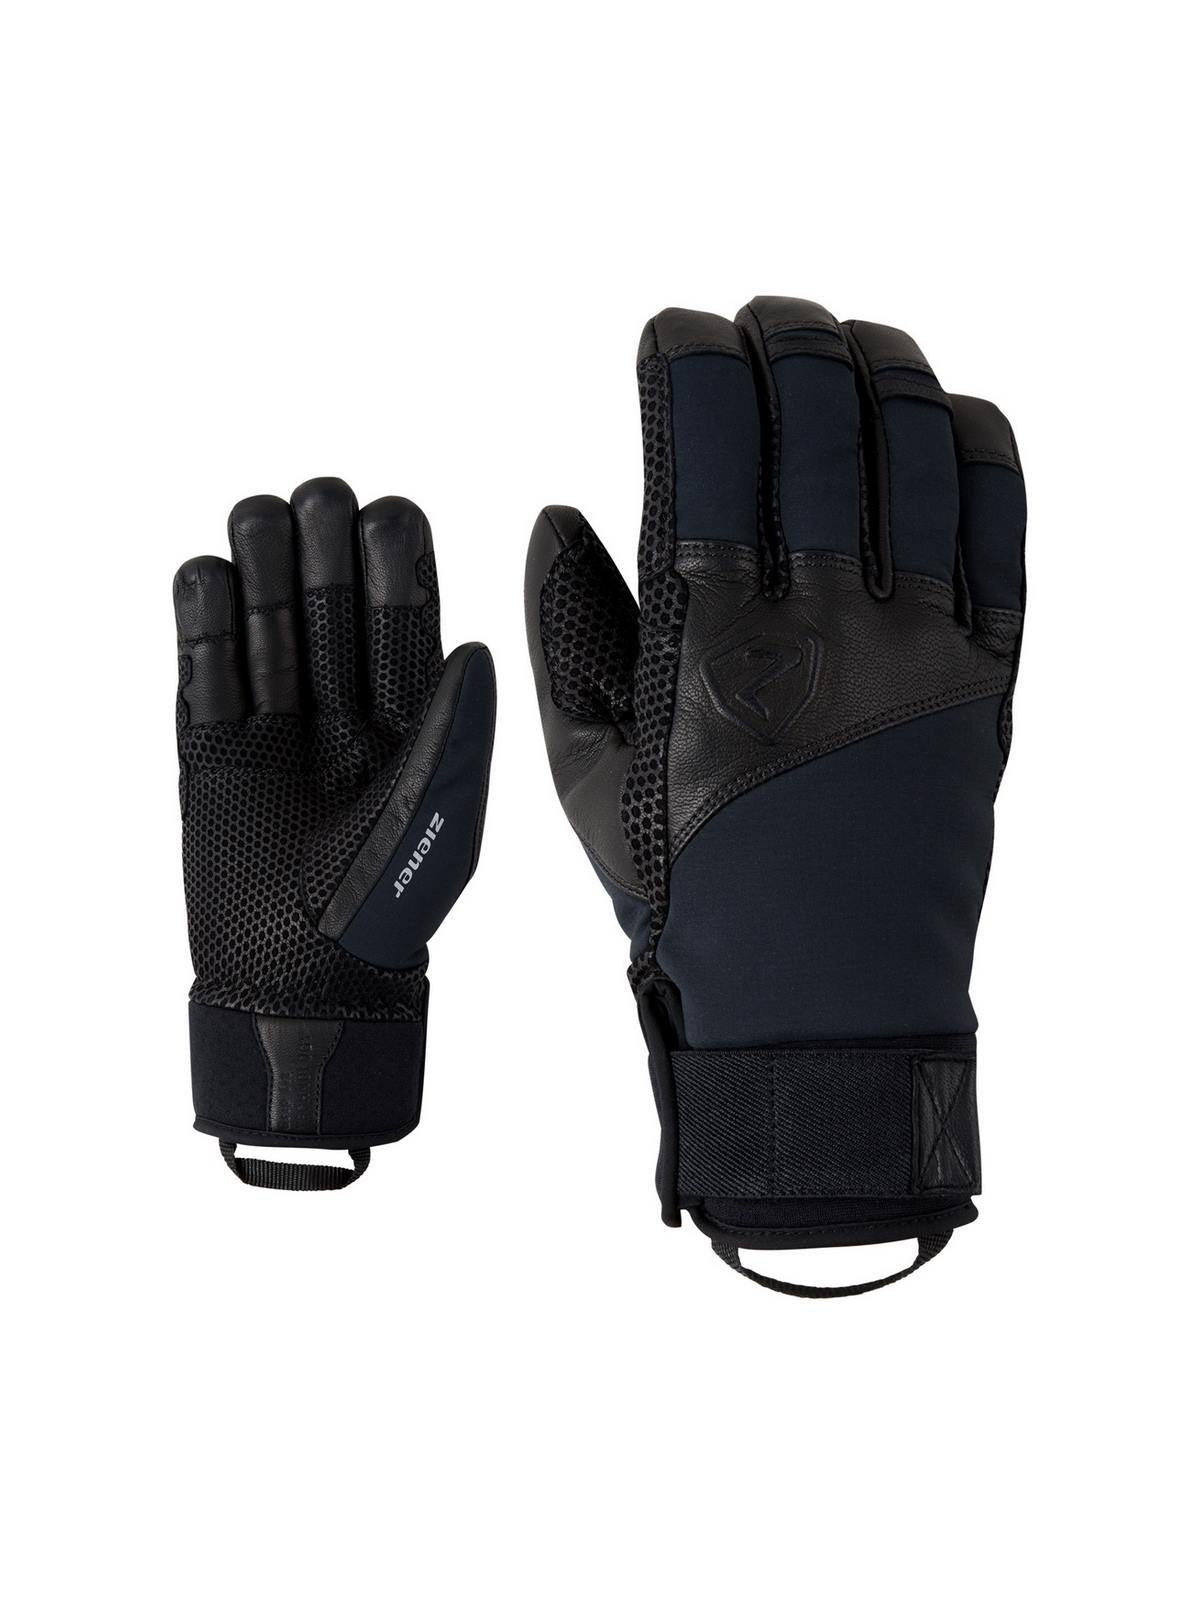 Rękawice narciarskie ZIENER GAVANUS AS® PR Glove Mountaineering